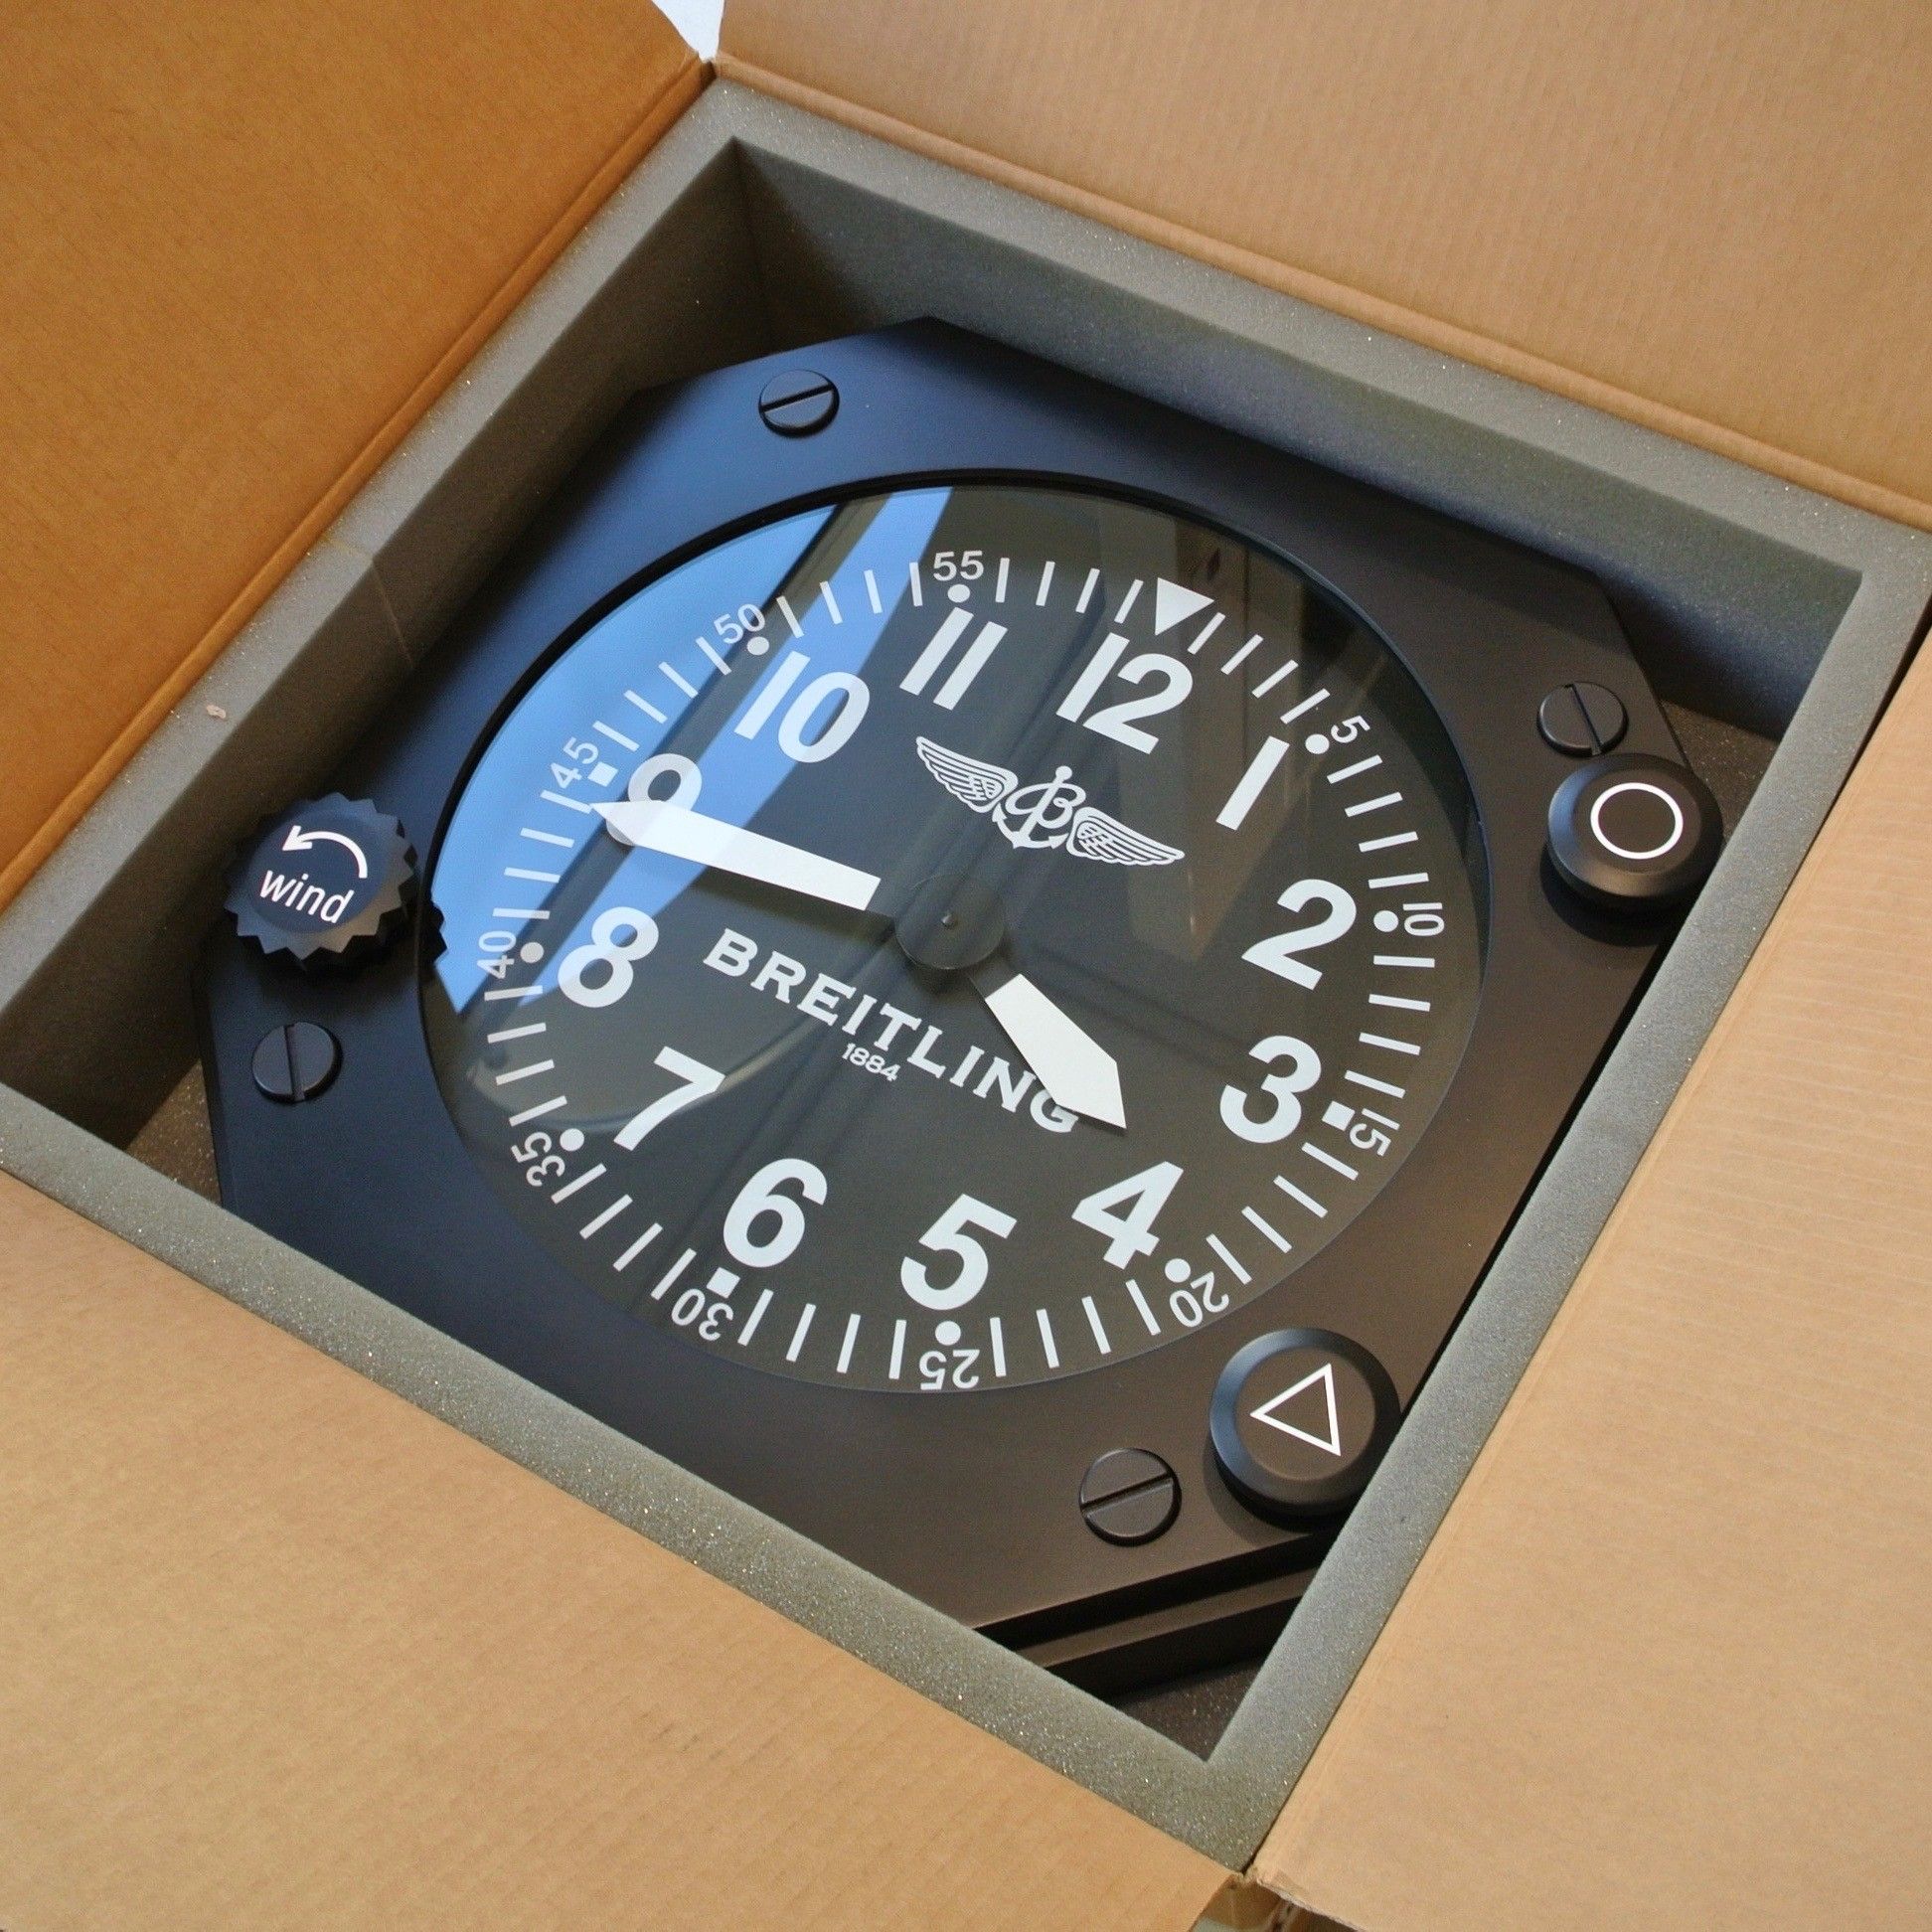 Breitling Wall Clock Original